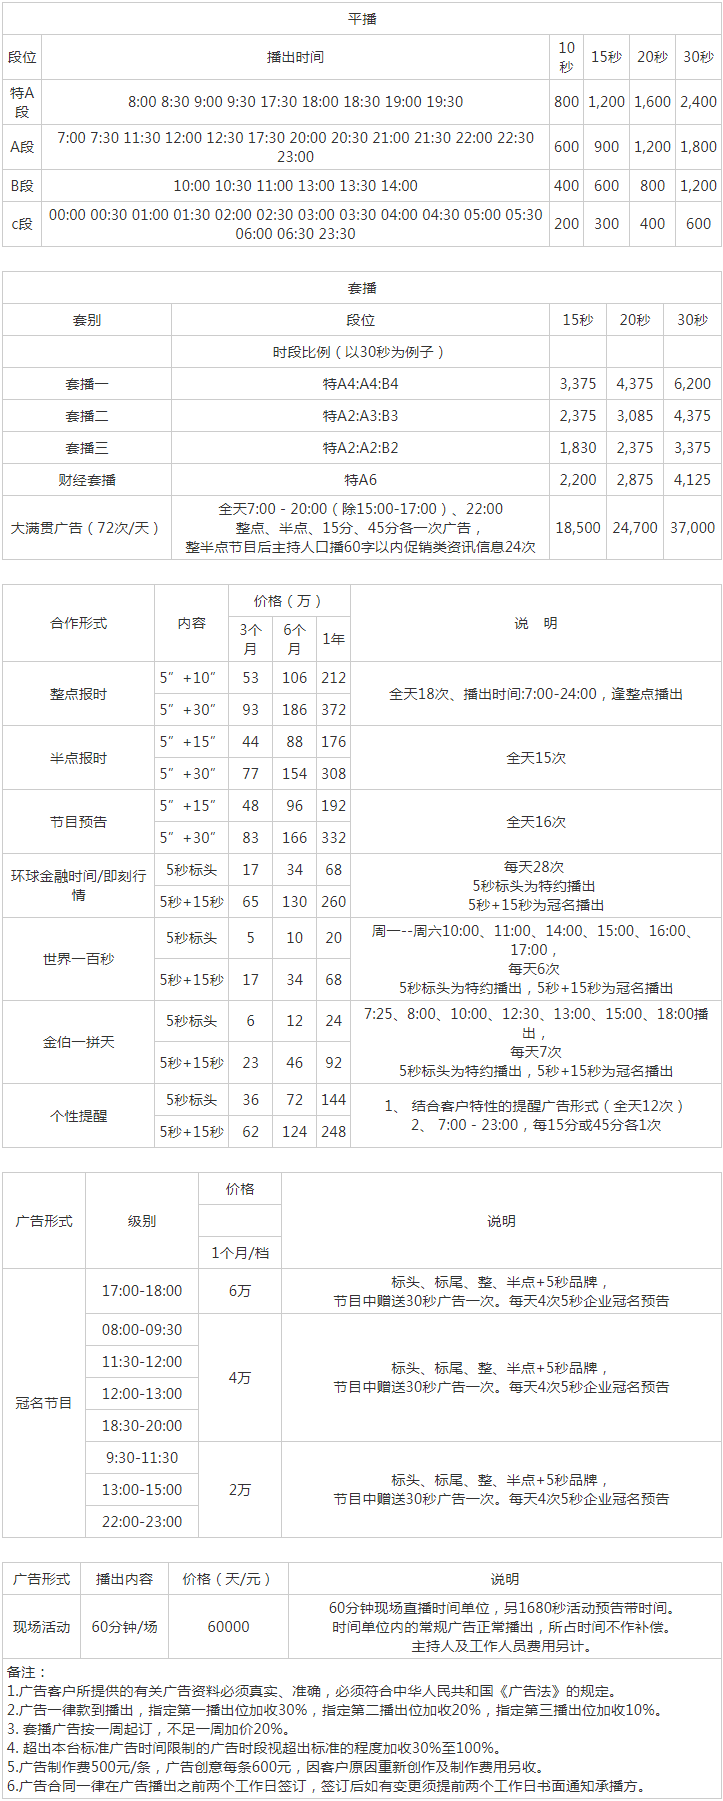 2012福建人民广播电台经济广播 FM96.1广告报价表.png